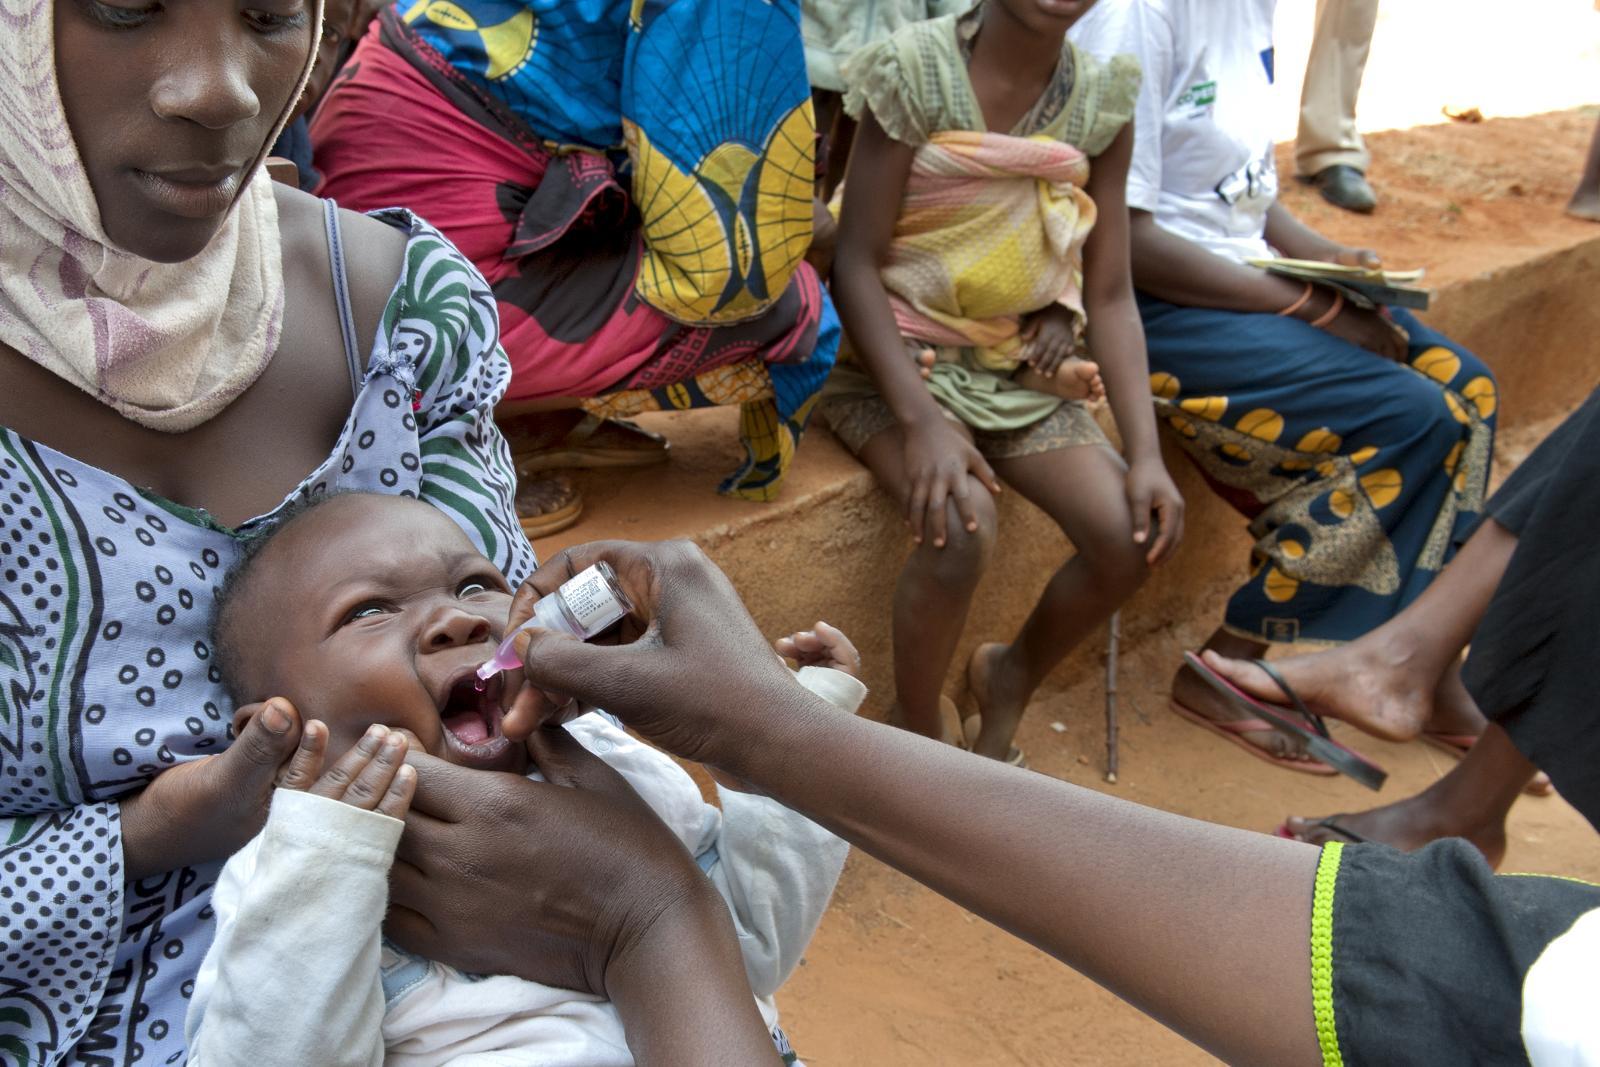 Den internasjonale vaksinealliansen har forebygget syv millioner dødsfall i 73 fattige land. Blant annet er nye vaksiner mot lungebetennelse og diaré introdusert.  